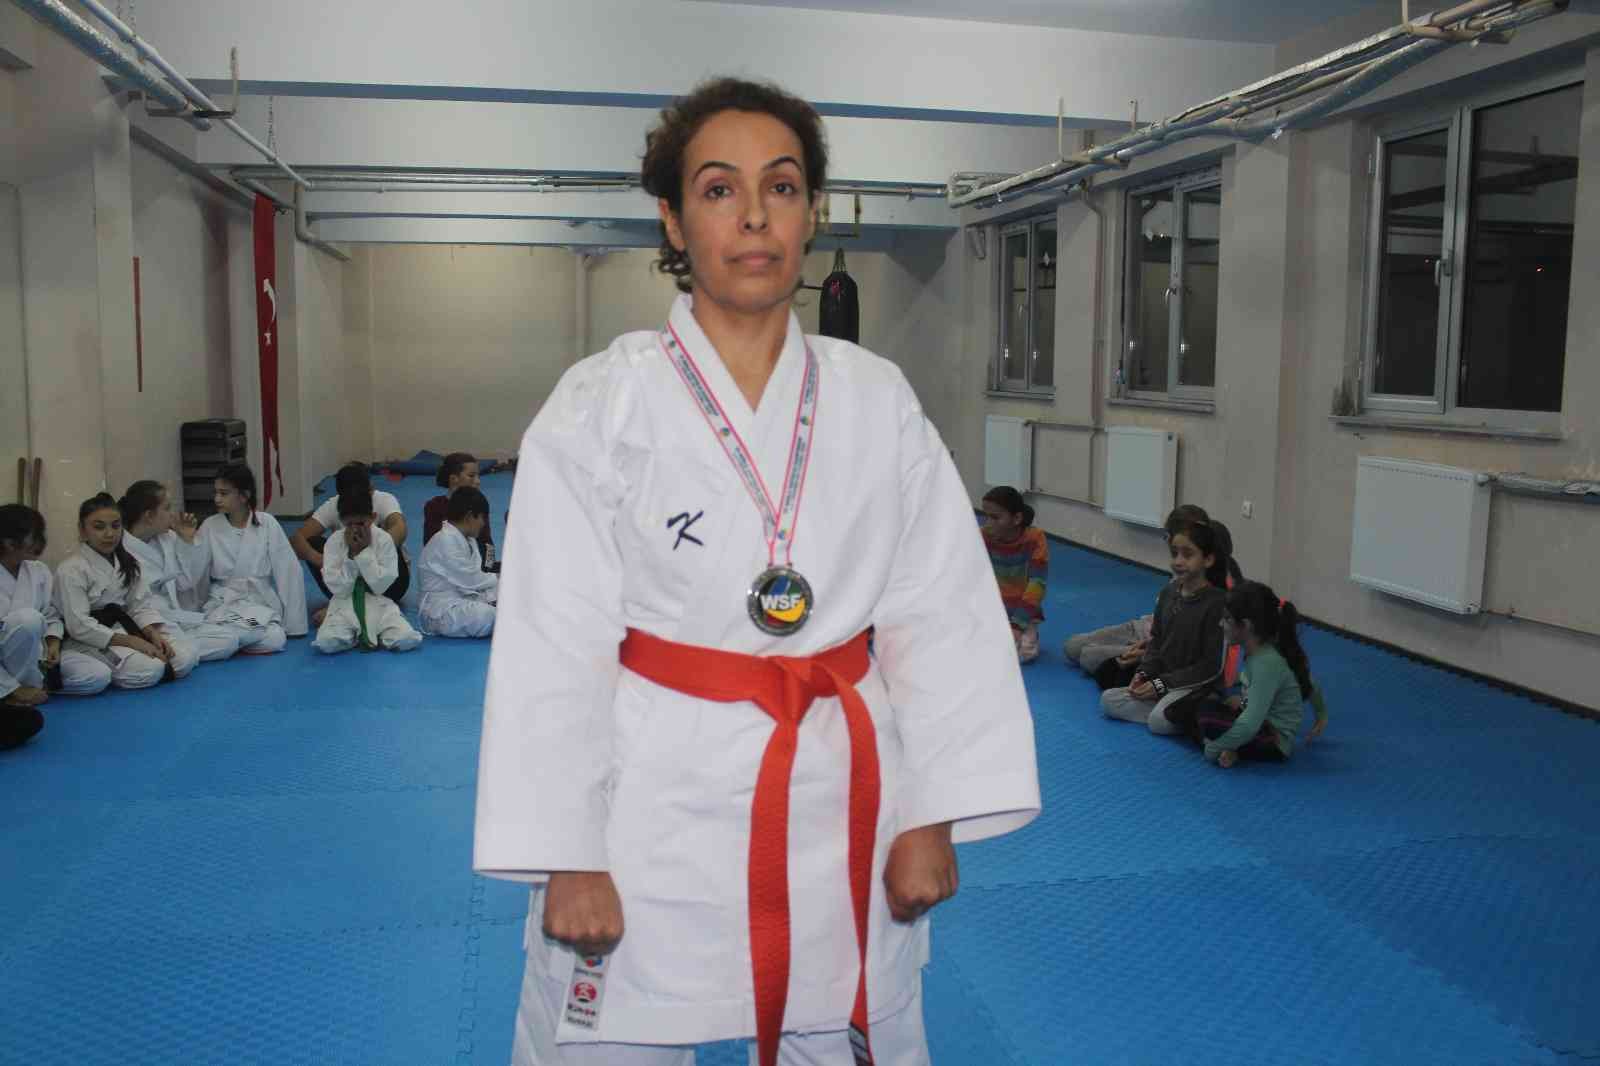 Kadın doktor karatede dünya 2.’si oldu #giresun